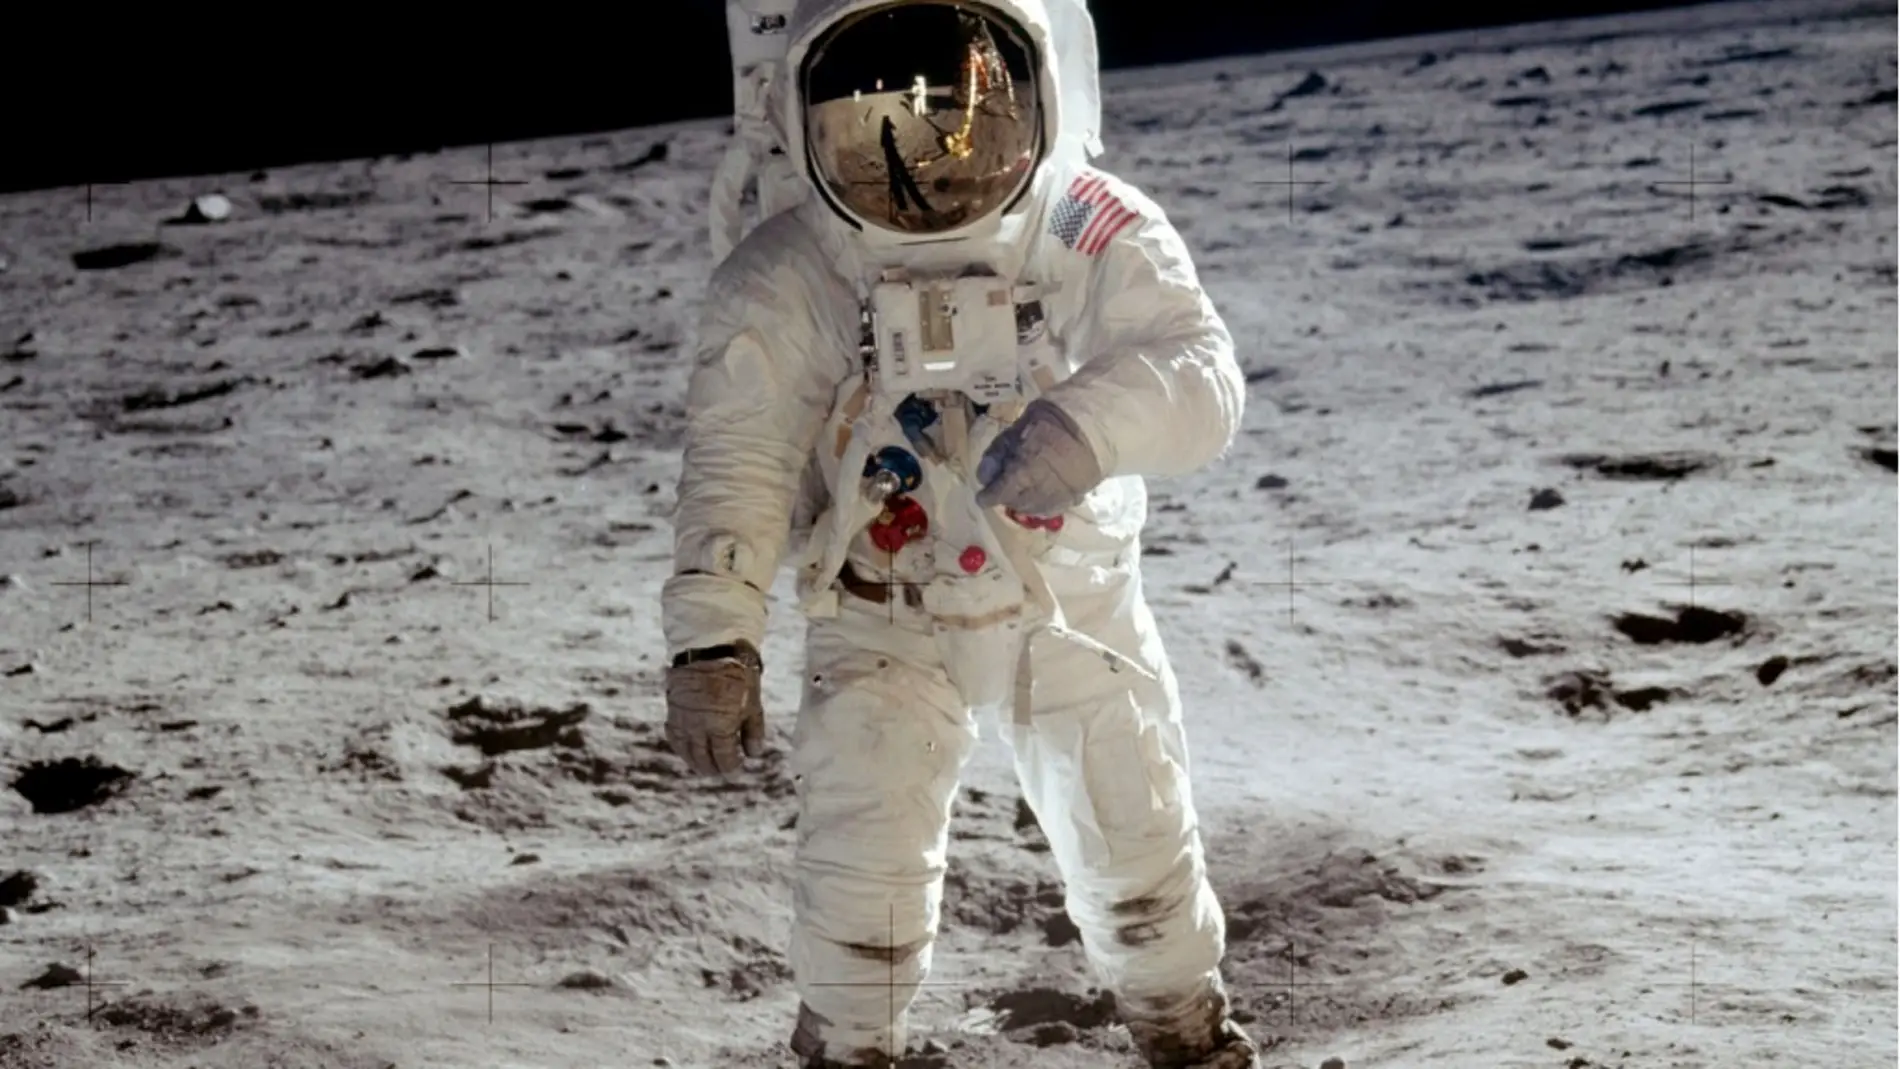 El astronauta Amstrong en la luna